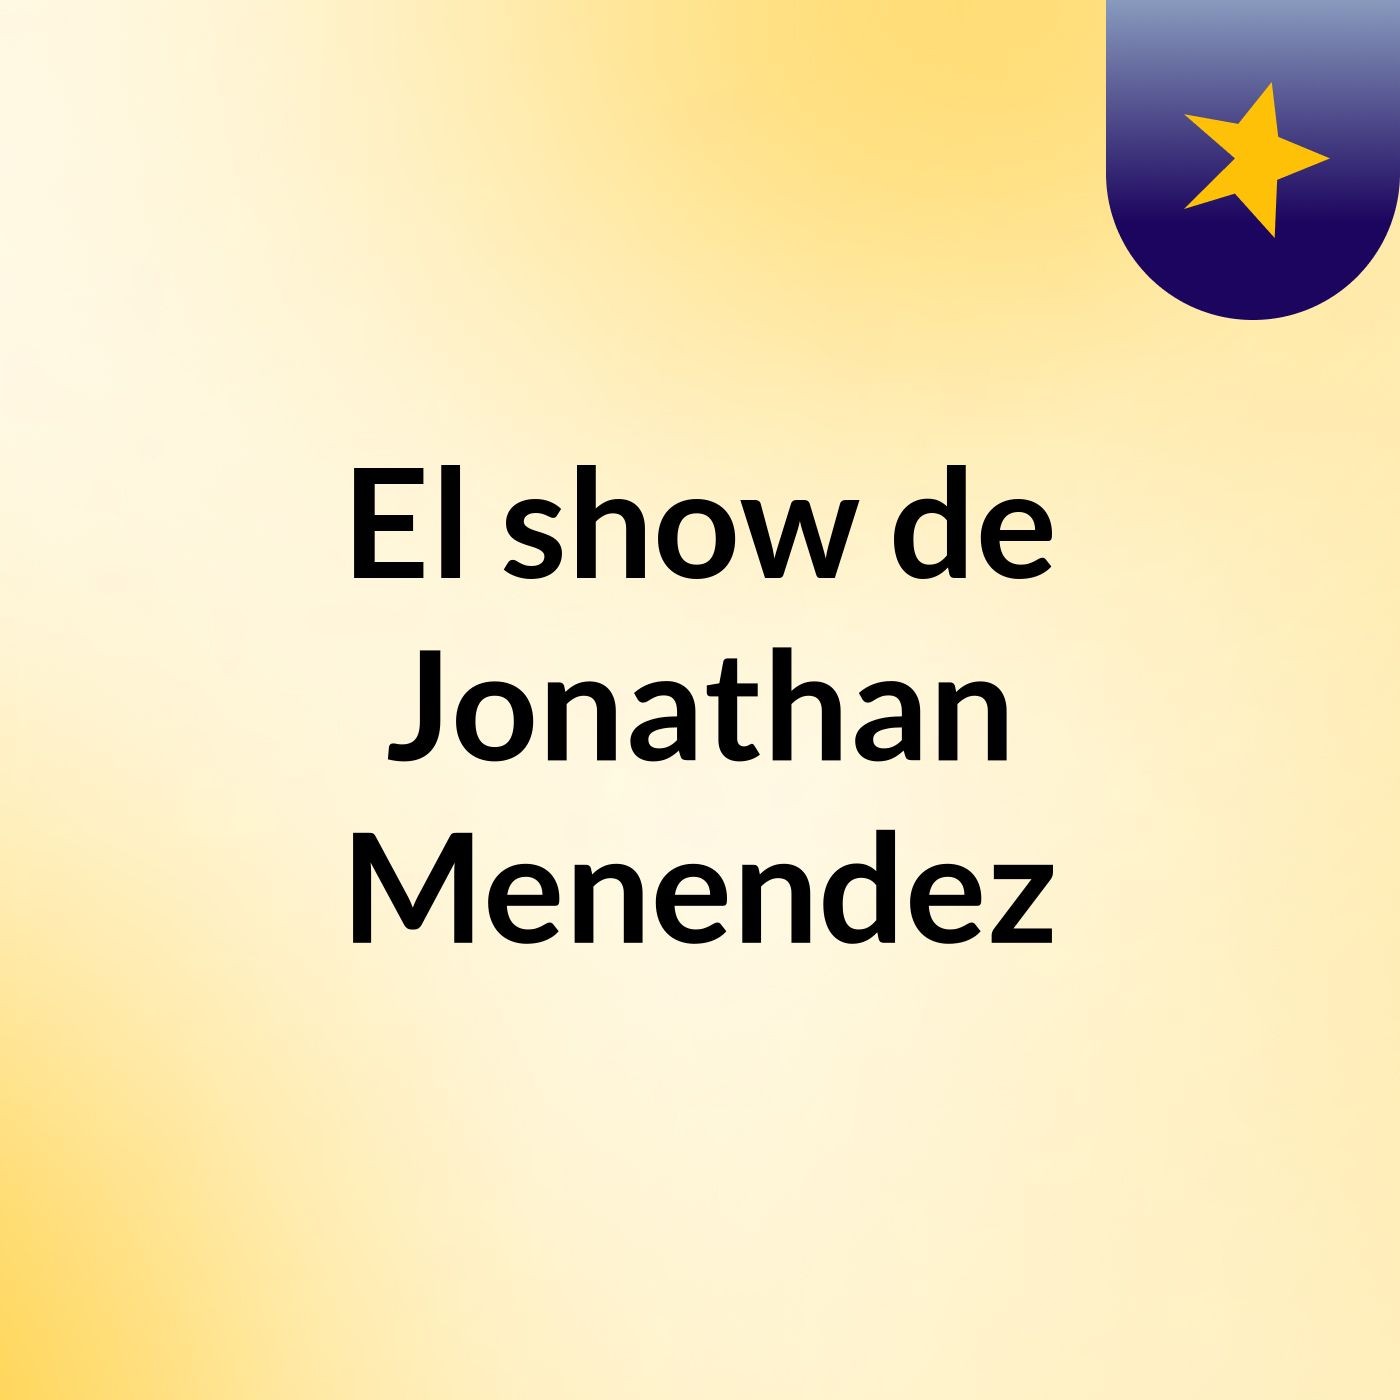 El show de Jonathan Menendez